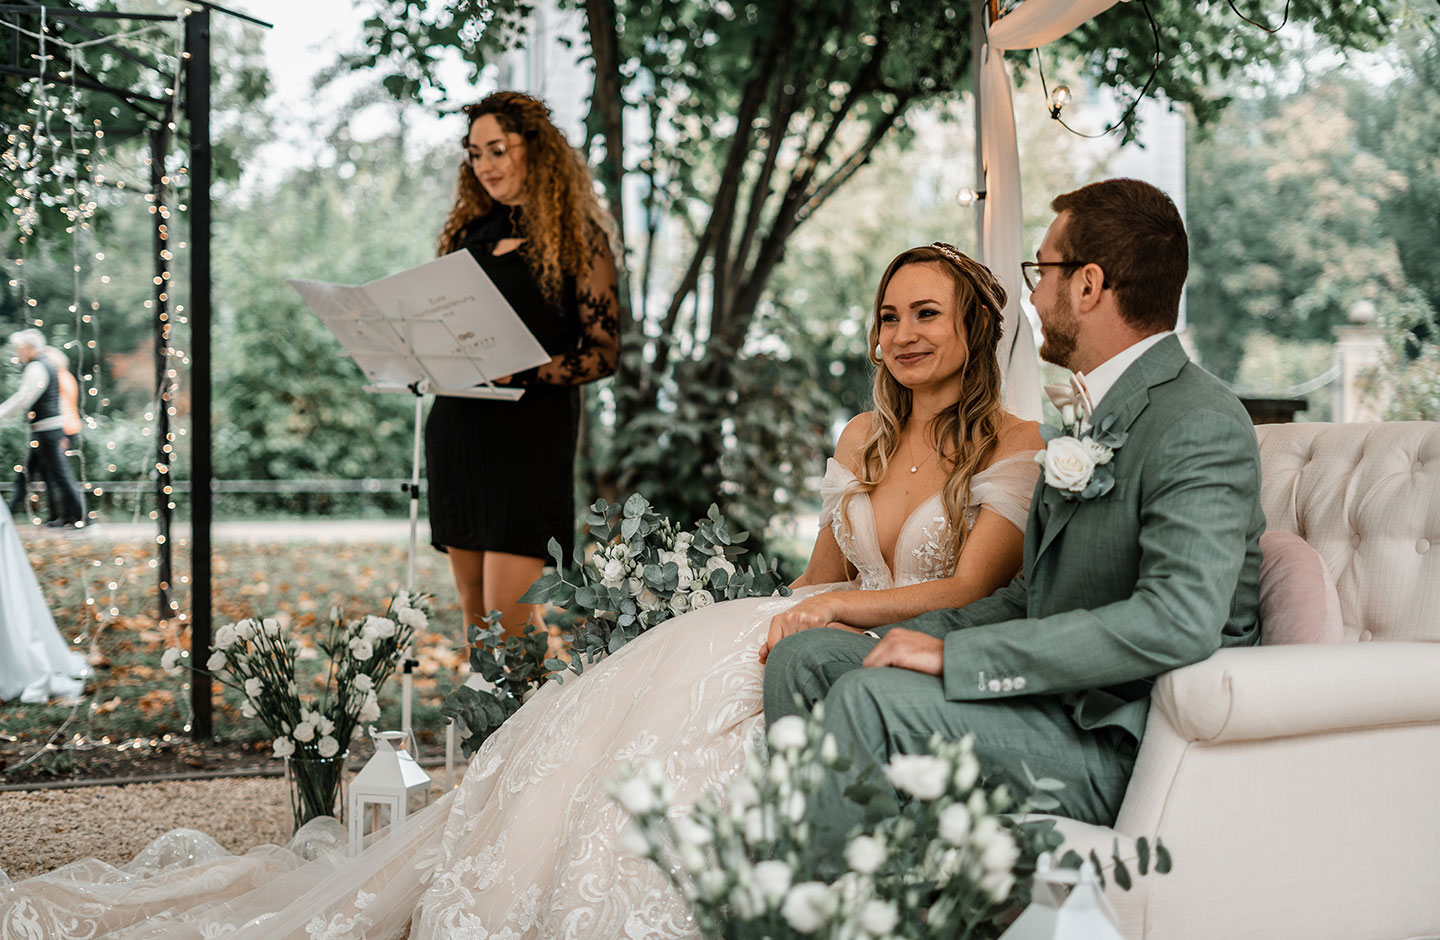 Das Hochzeitspaar bestehend aus der Braut im langen, cremefarbenen Tüllkleid und dem Bräutigam im grau-grünen Anzug, sitzen auf dem cremefarbenen Sofa unter dem Traubogen und sind bereit für die Trauzeremonie. Im Hintergrund ist die Traurednerin zu sehen.